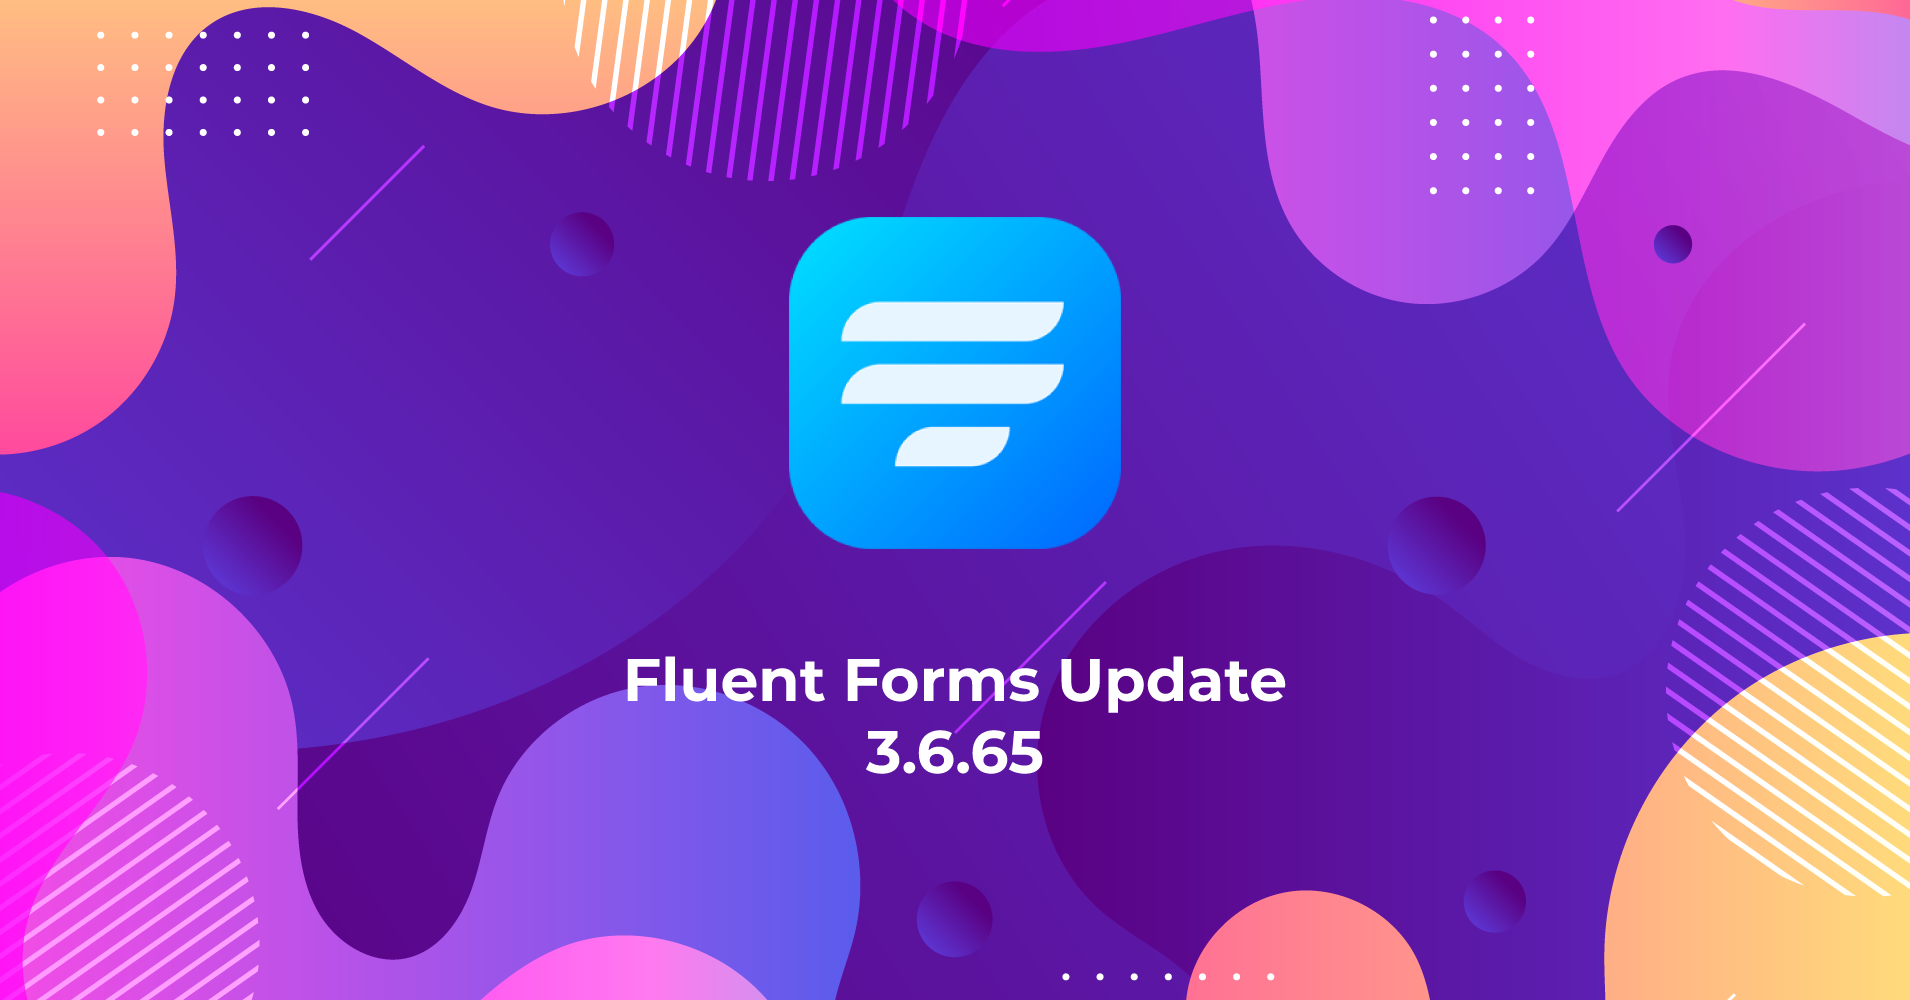 Fluent Forms Update 3.6.65